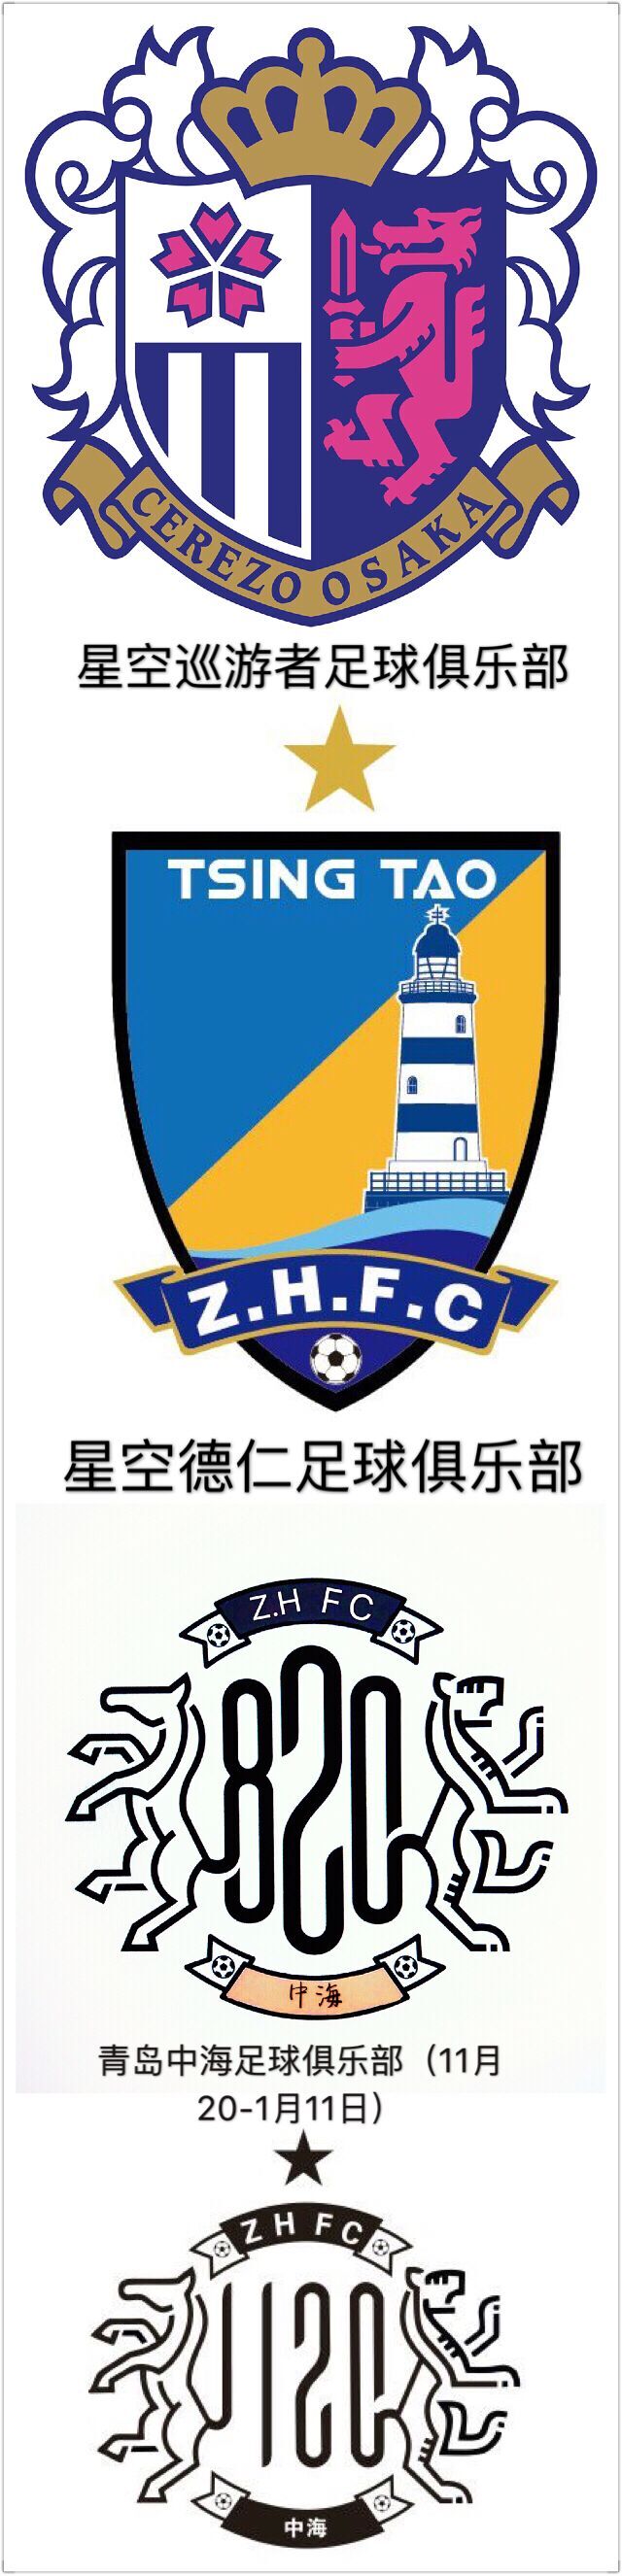 青島中海足球俱樂部